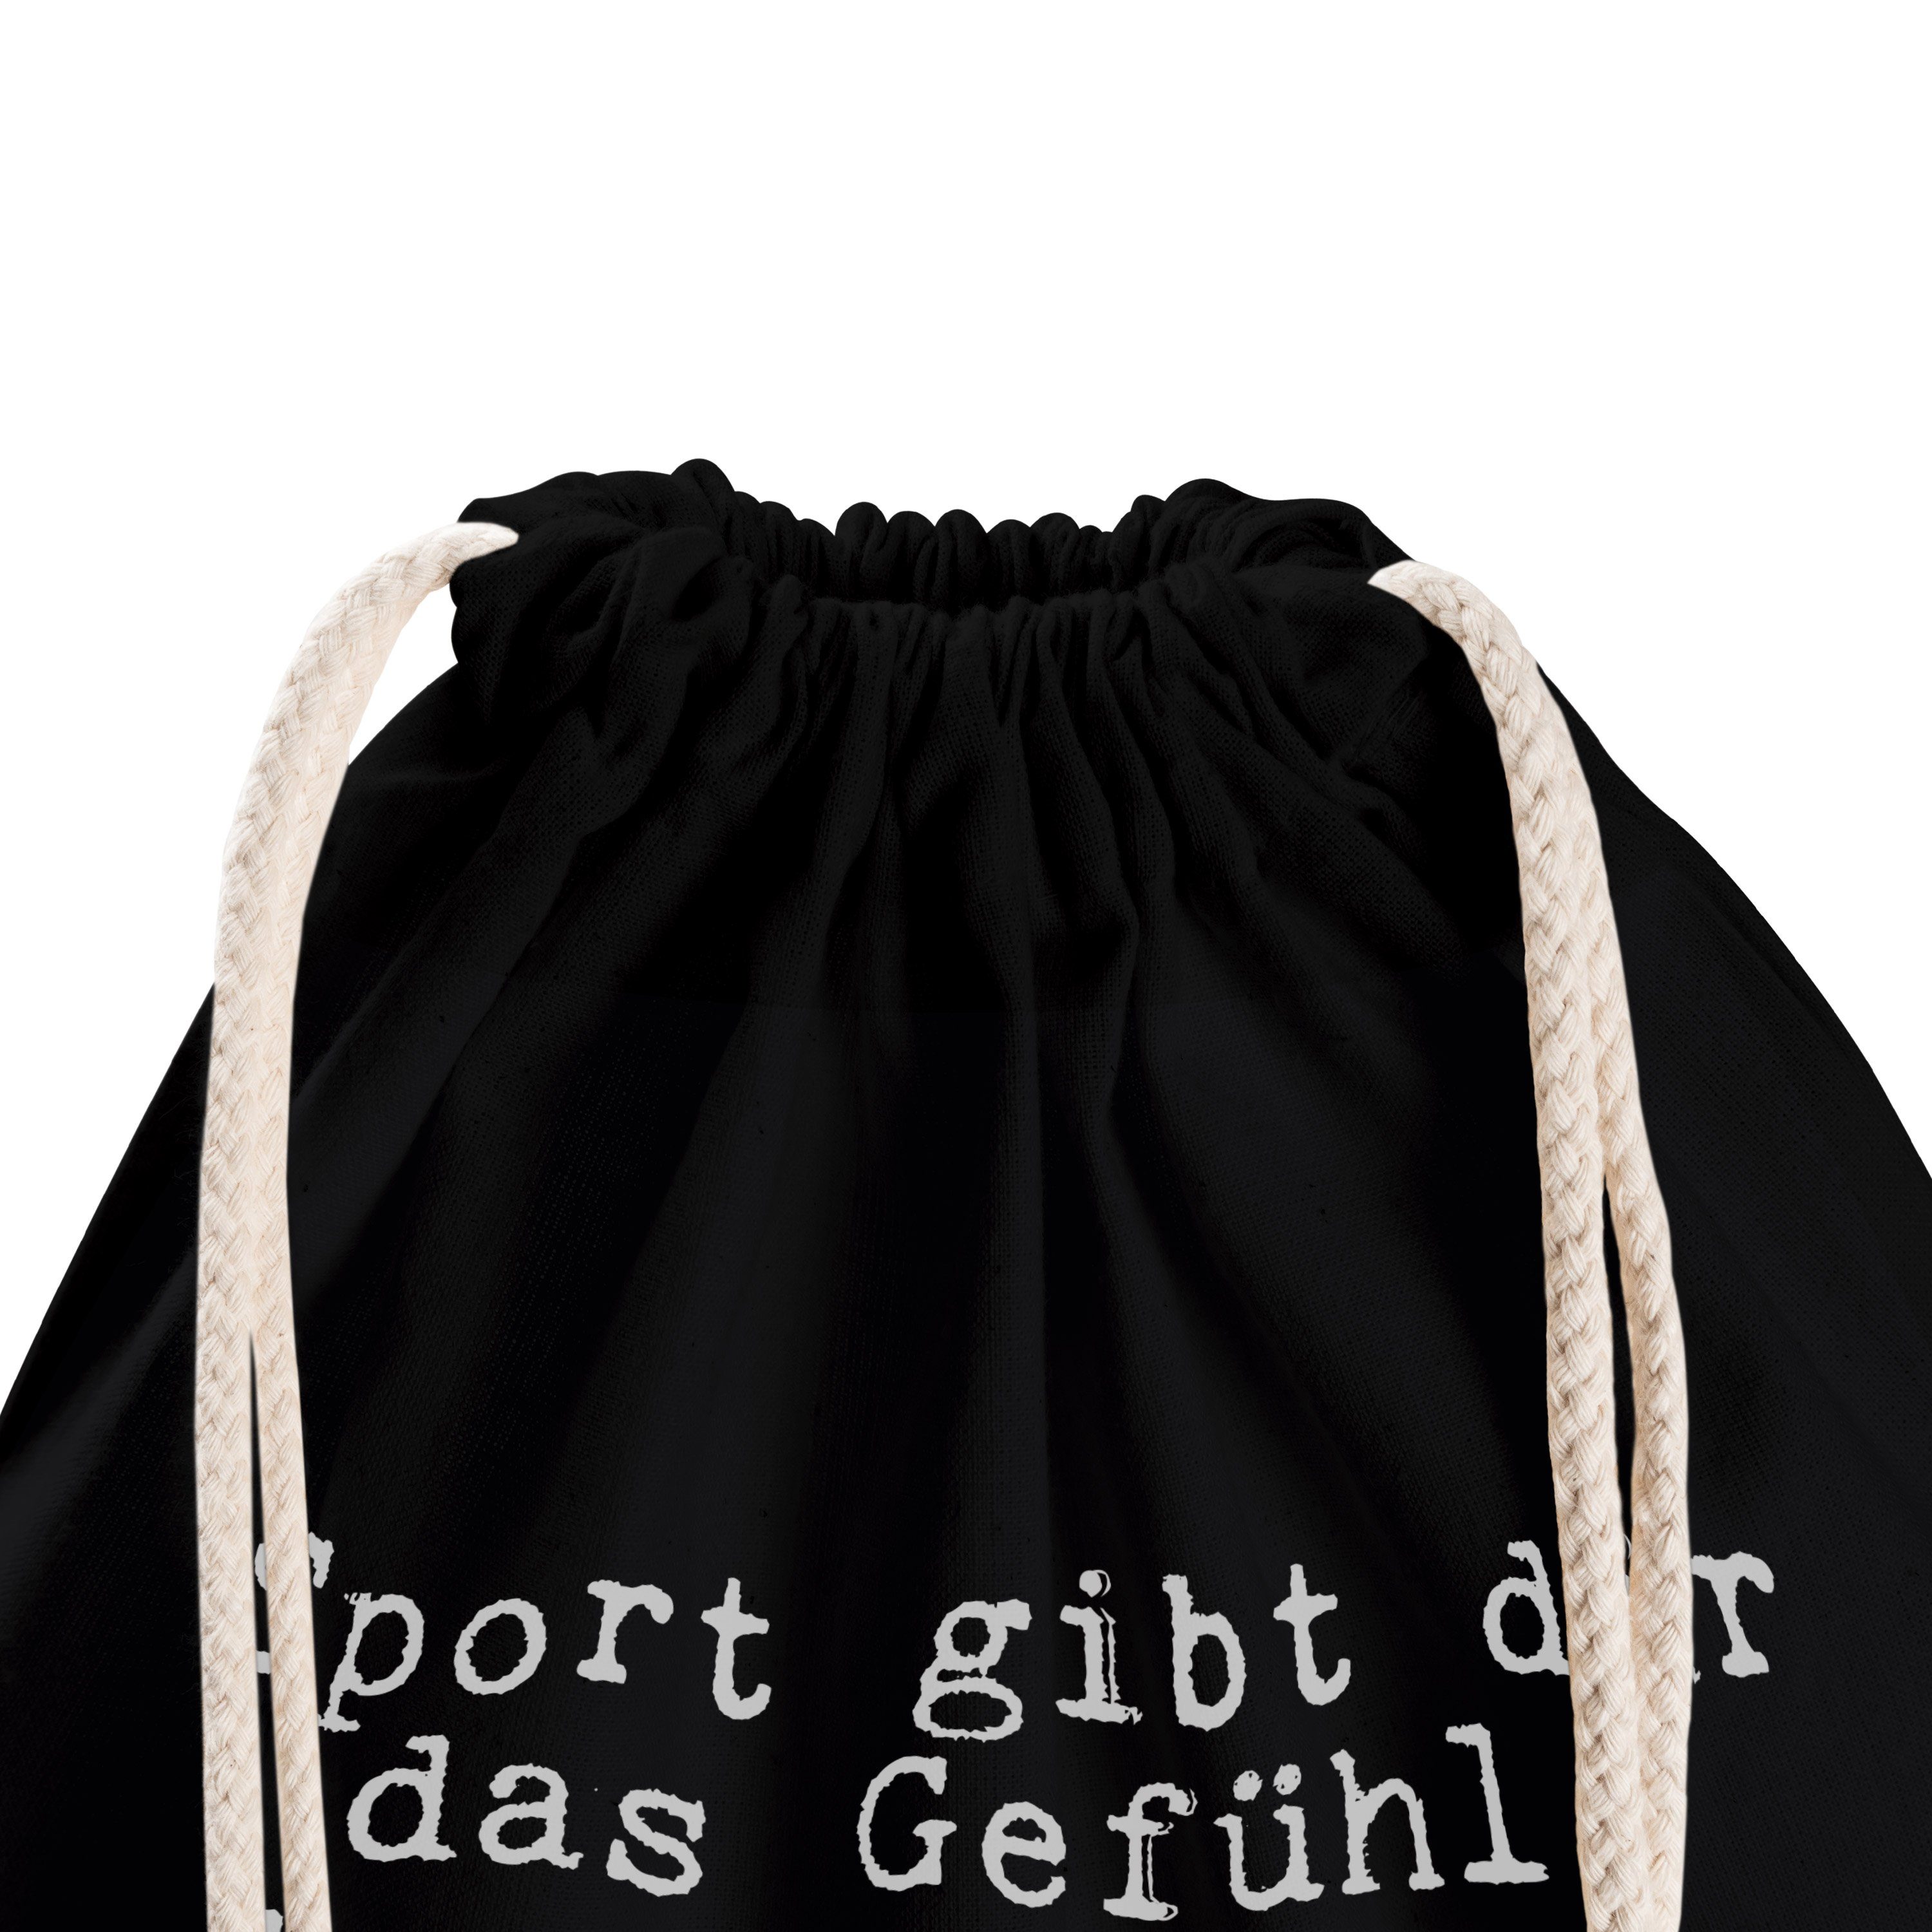 Mrs. Weishe Schwarz Sporttasche Aussehen, - (1-tlg) das... dir Sport Panda Sprüche, & Geschenk, Mr. - gibt